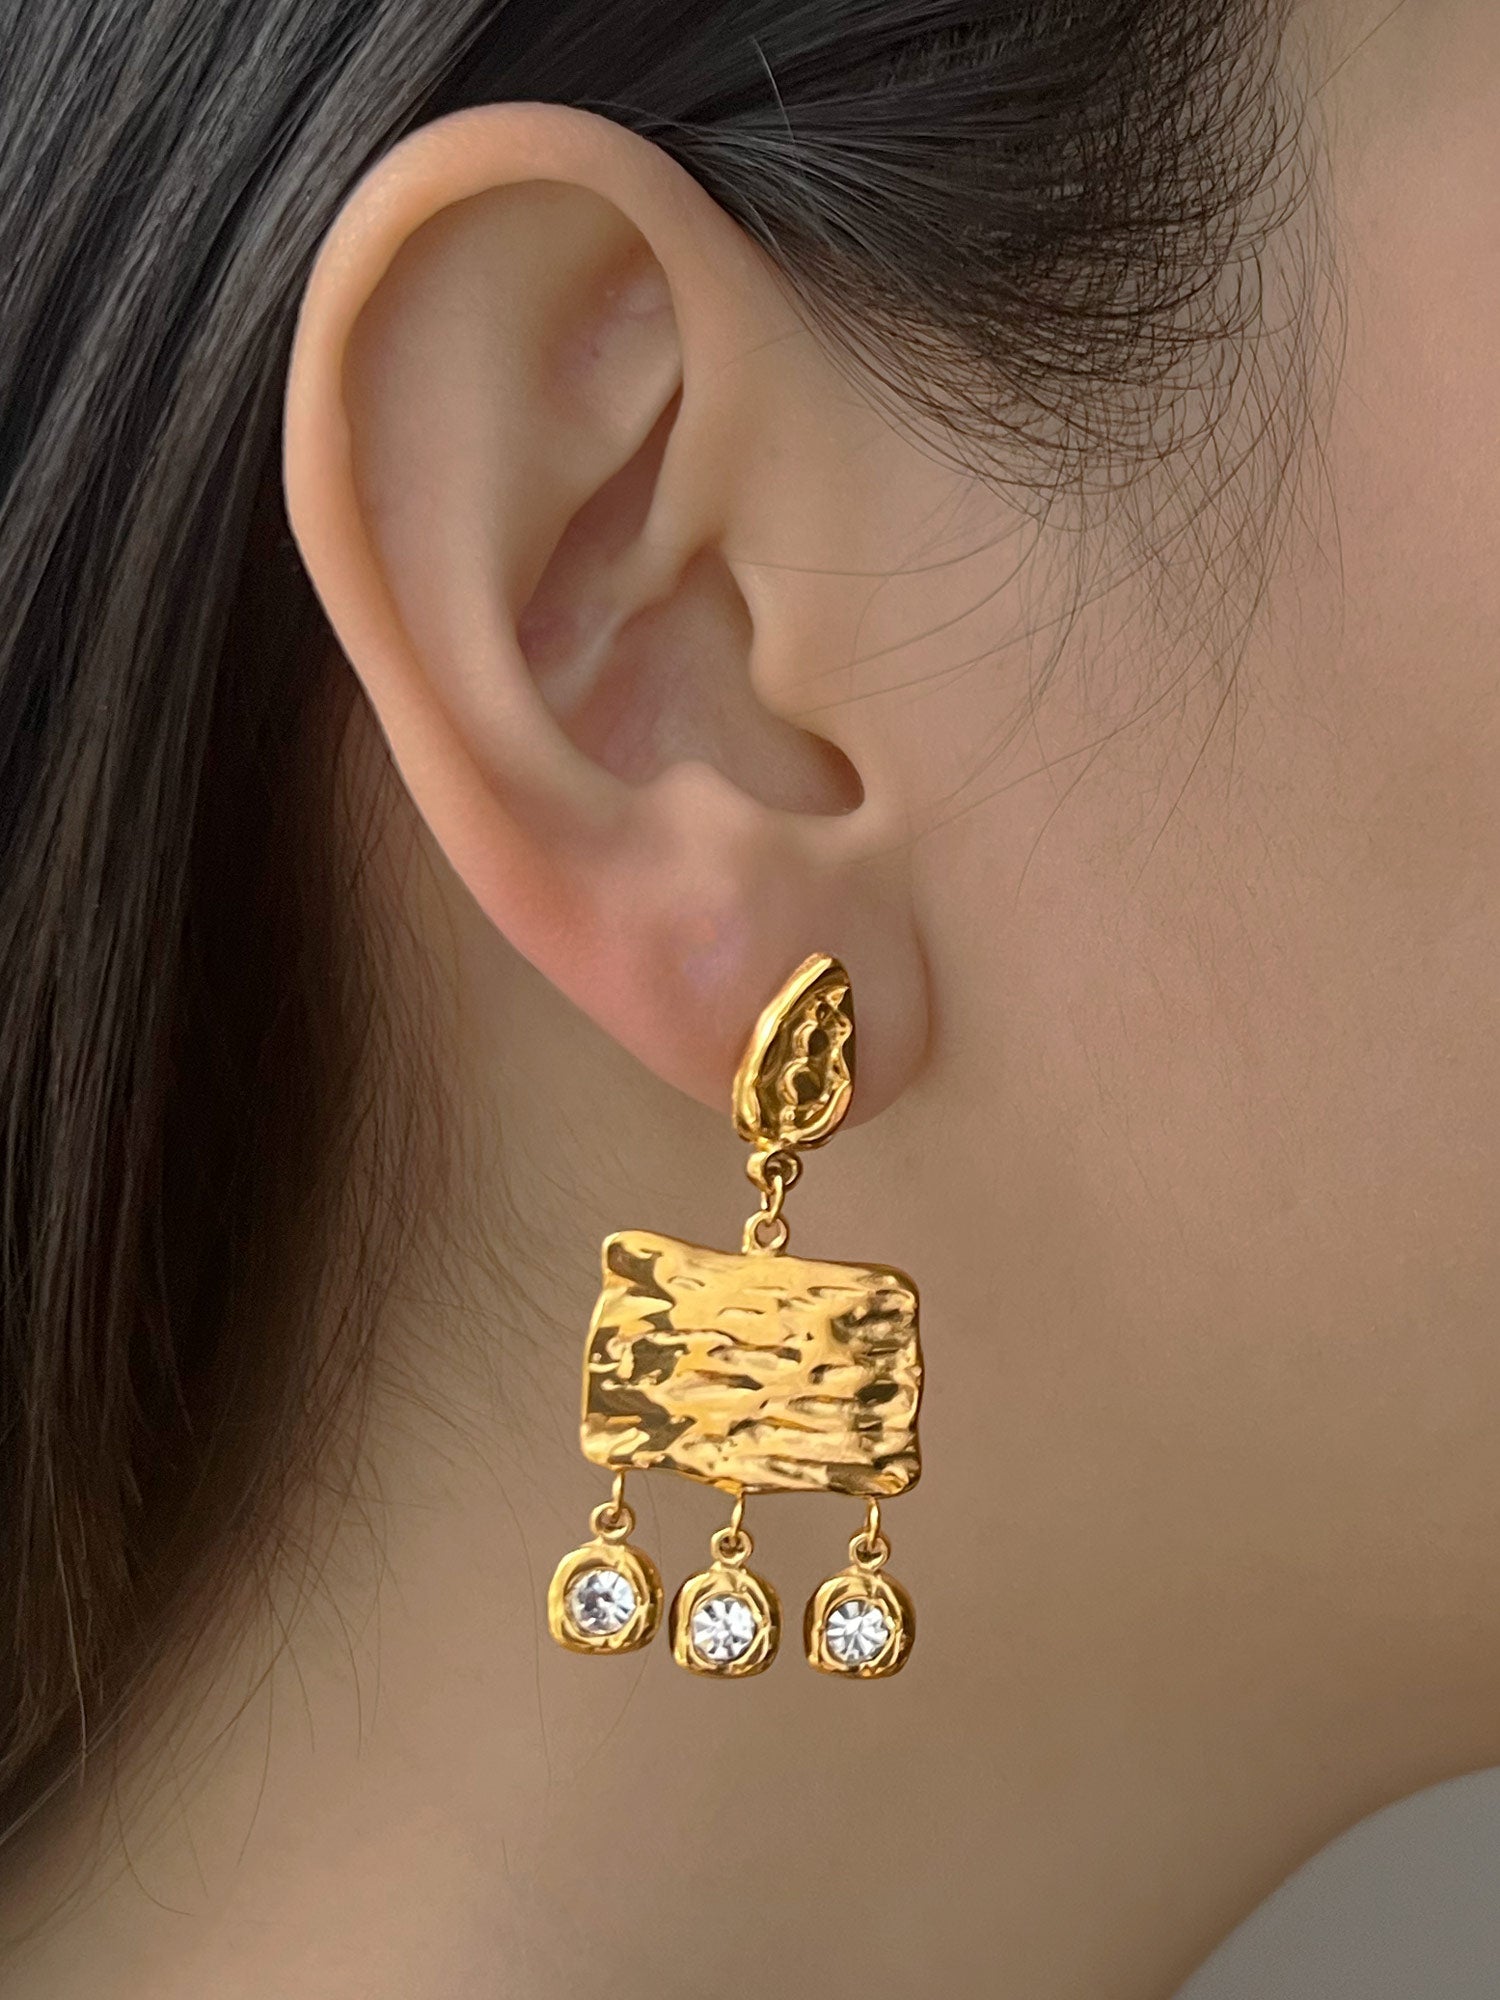 pharaoh earrings model